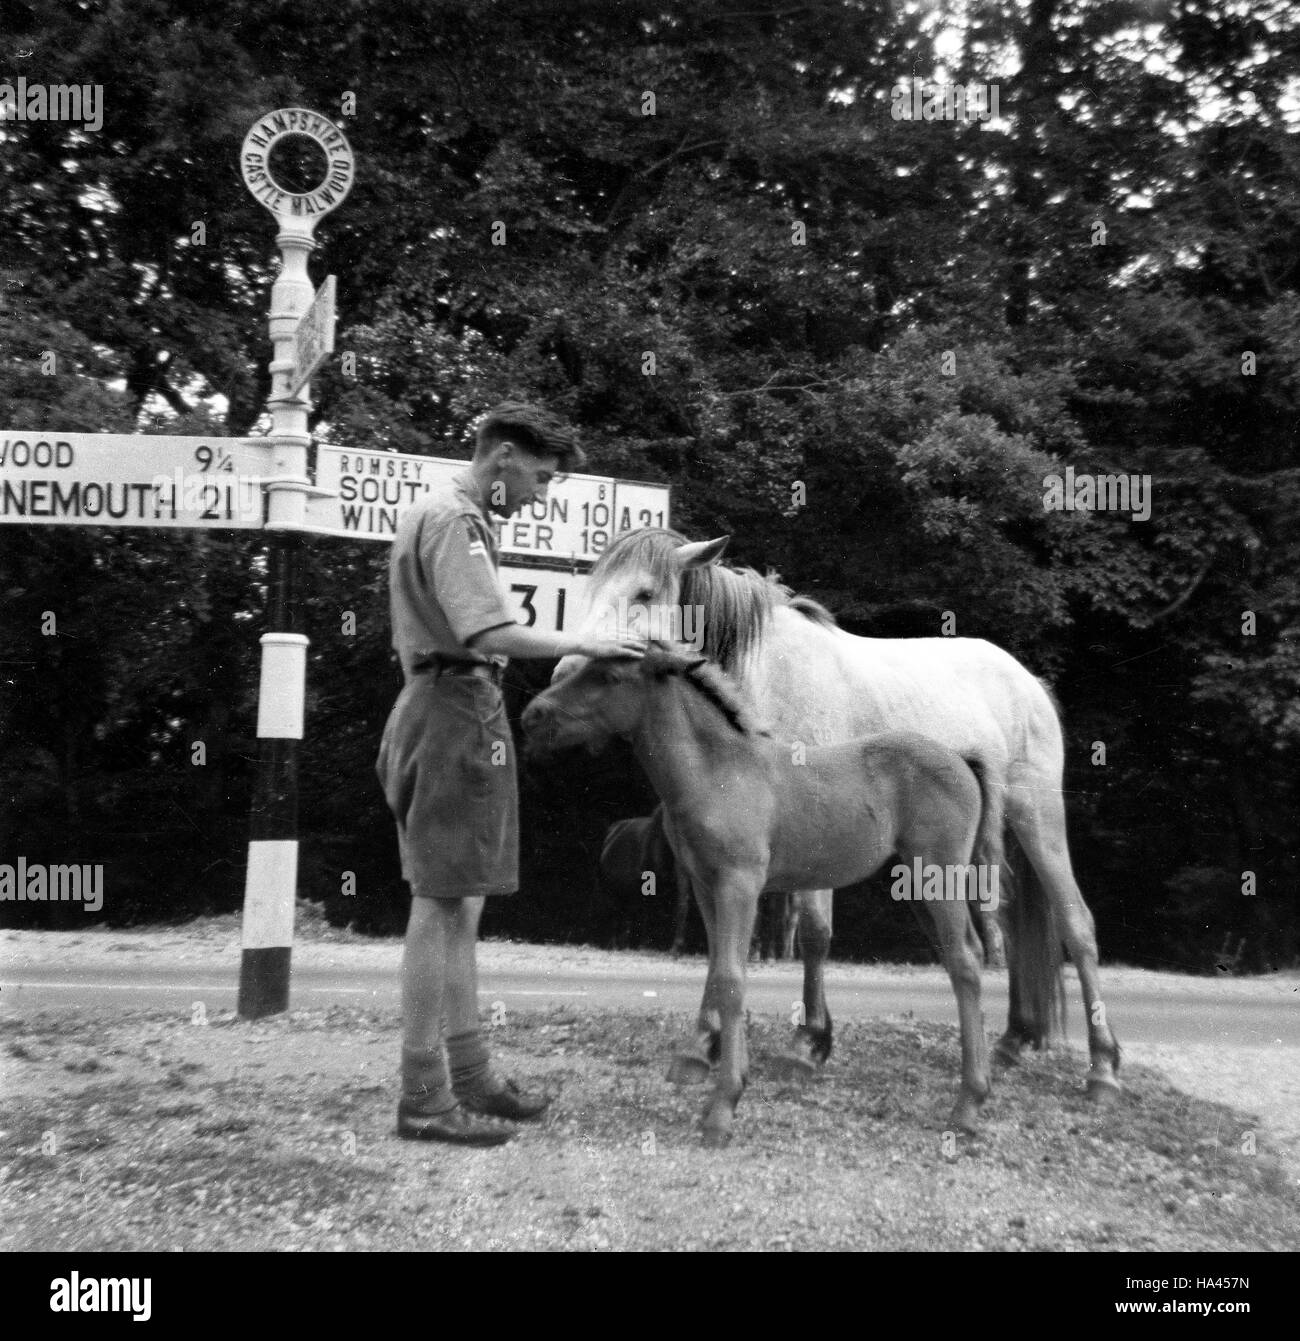 Chef scout de caresser les poneys New Forest Junction sur la route au château d'Malwood dans le Hampshire Uk 1960 Banque D'Images